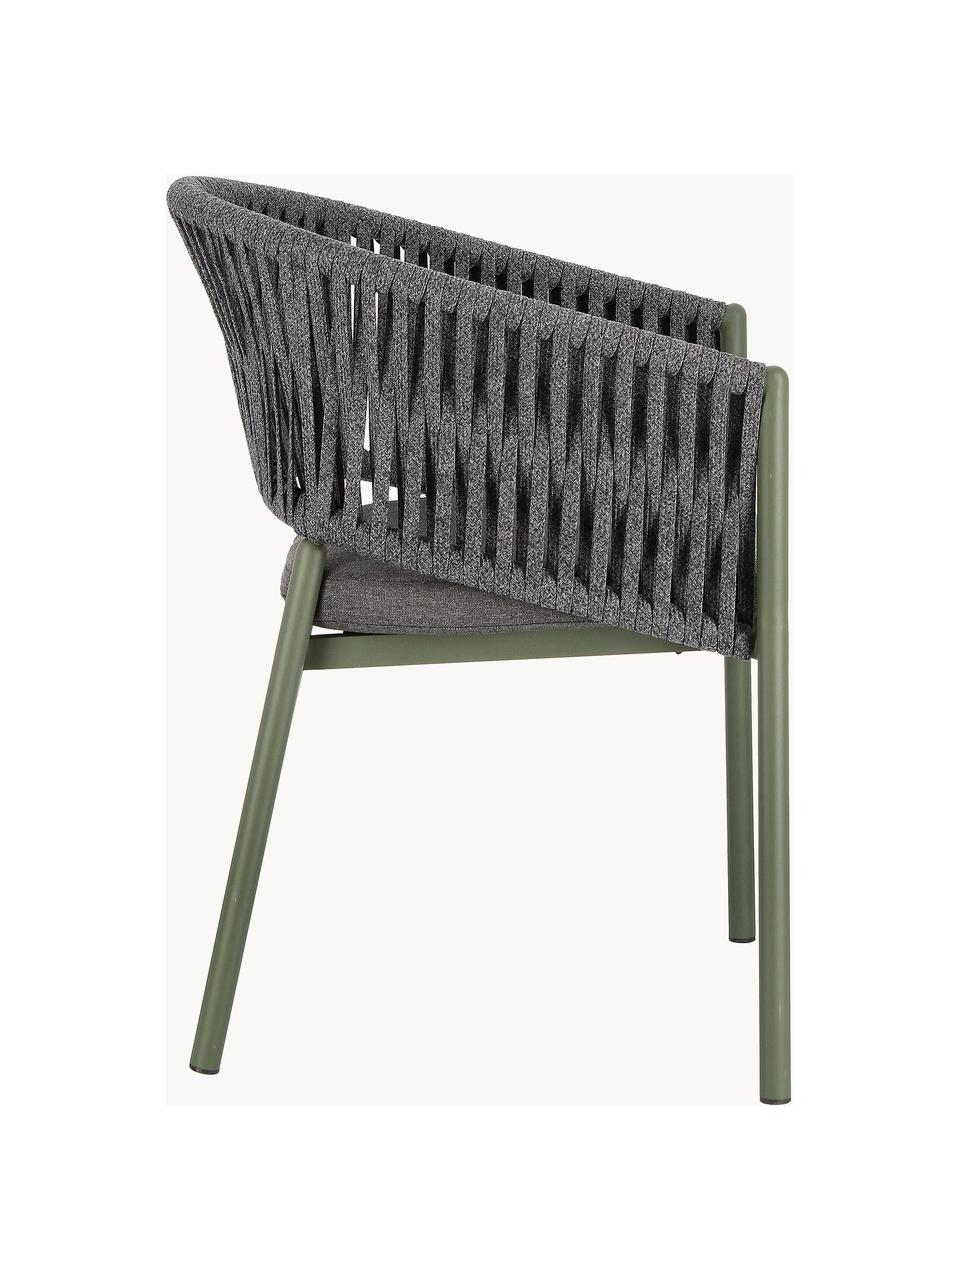 Krzesło ogrodowe Florencia, Stelaż: aluminium malowane proszk, Ciemnoszara tkanina, oliwkowy zielony, S 60 x W 80 cm